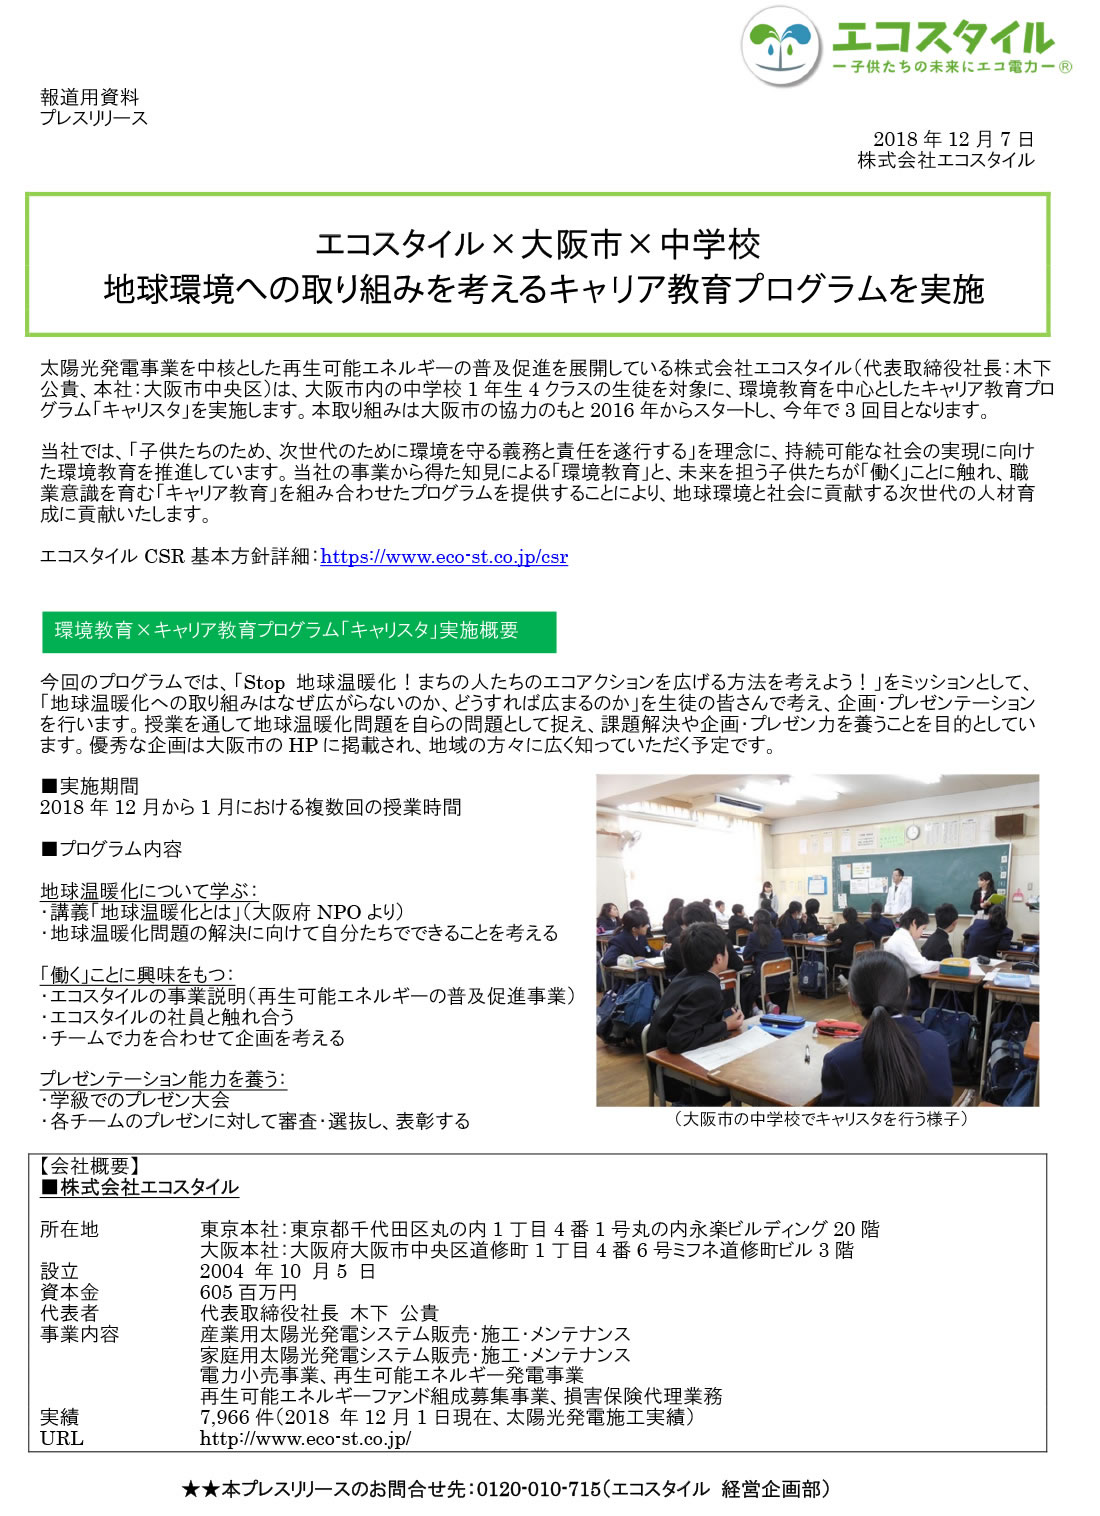 エコスタイル×大阪市×中学校 地球環境への取り組みを考えるキャリア教育プログラムを実施